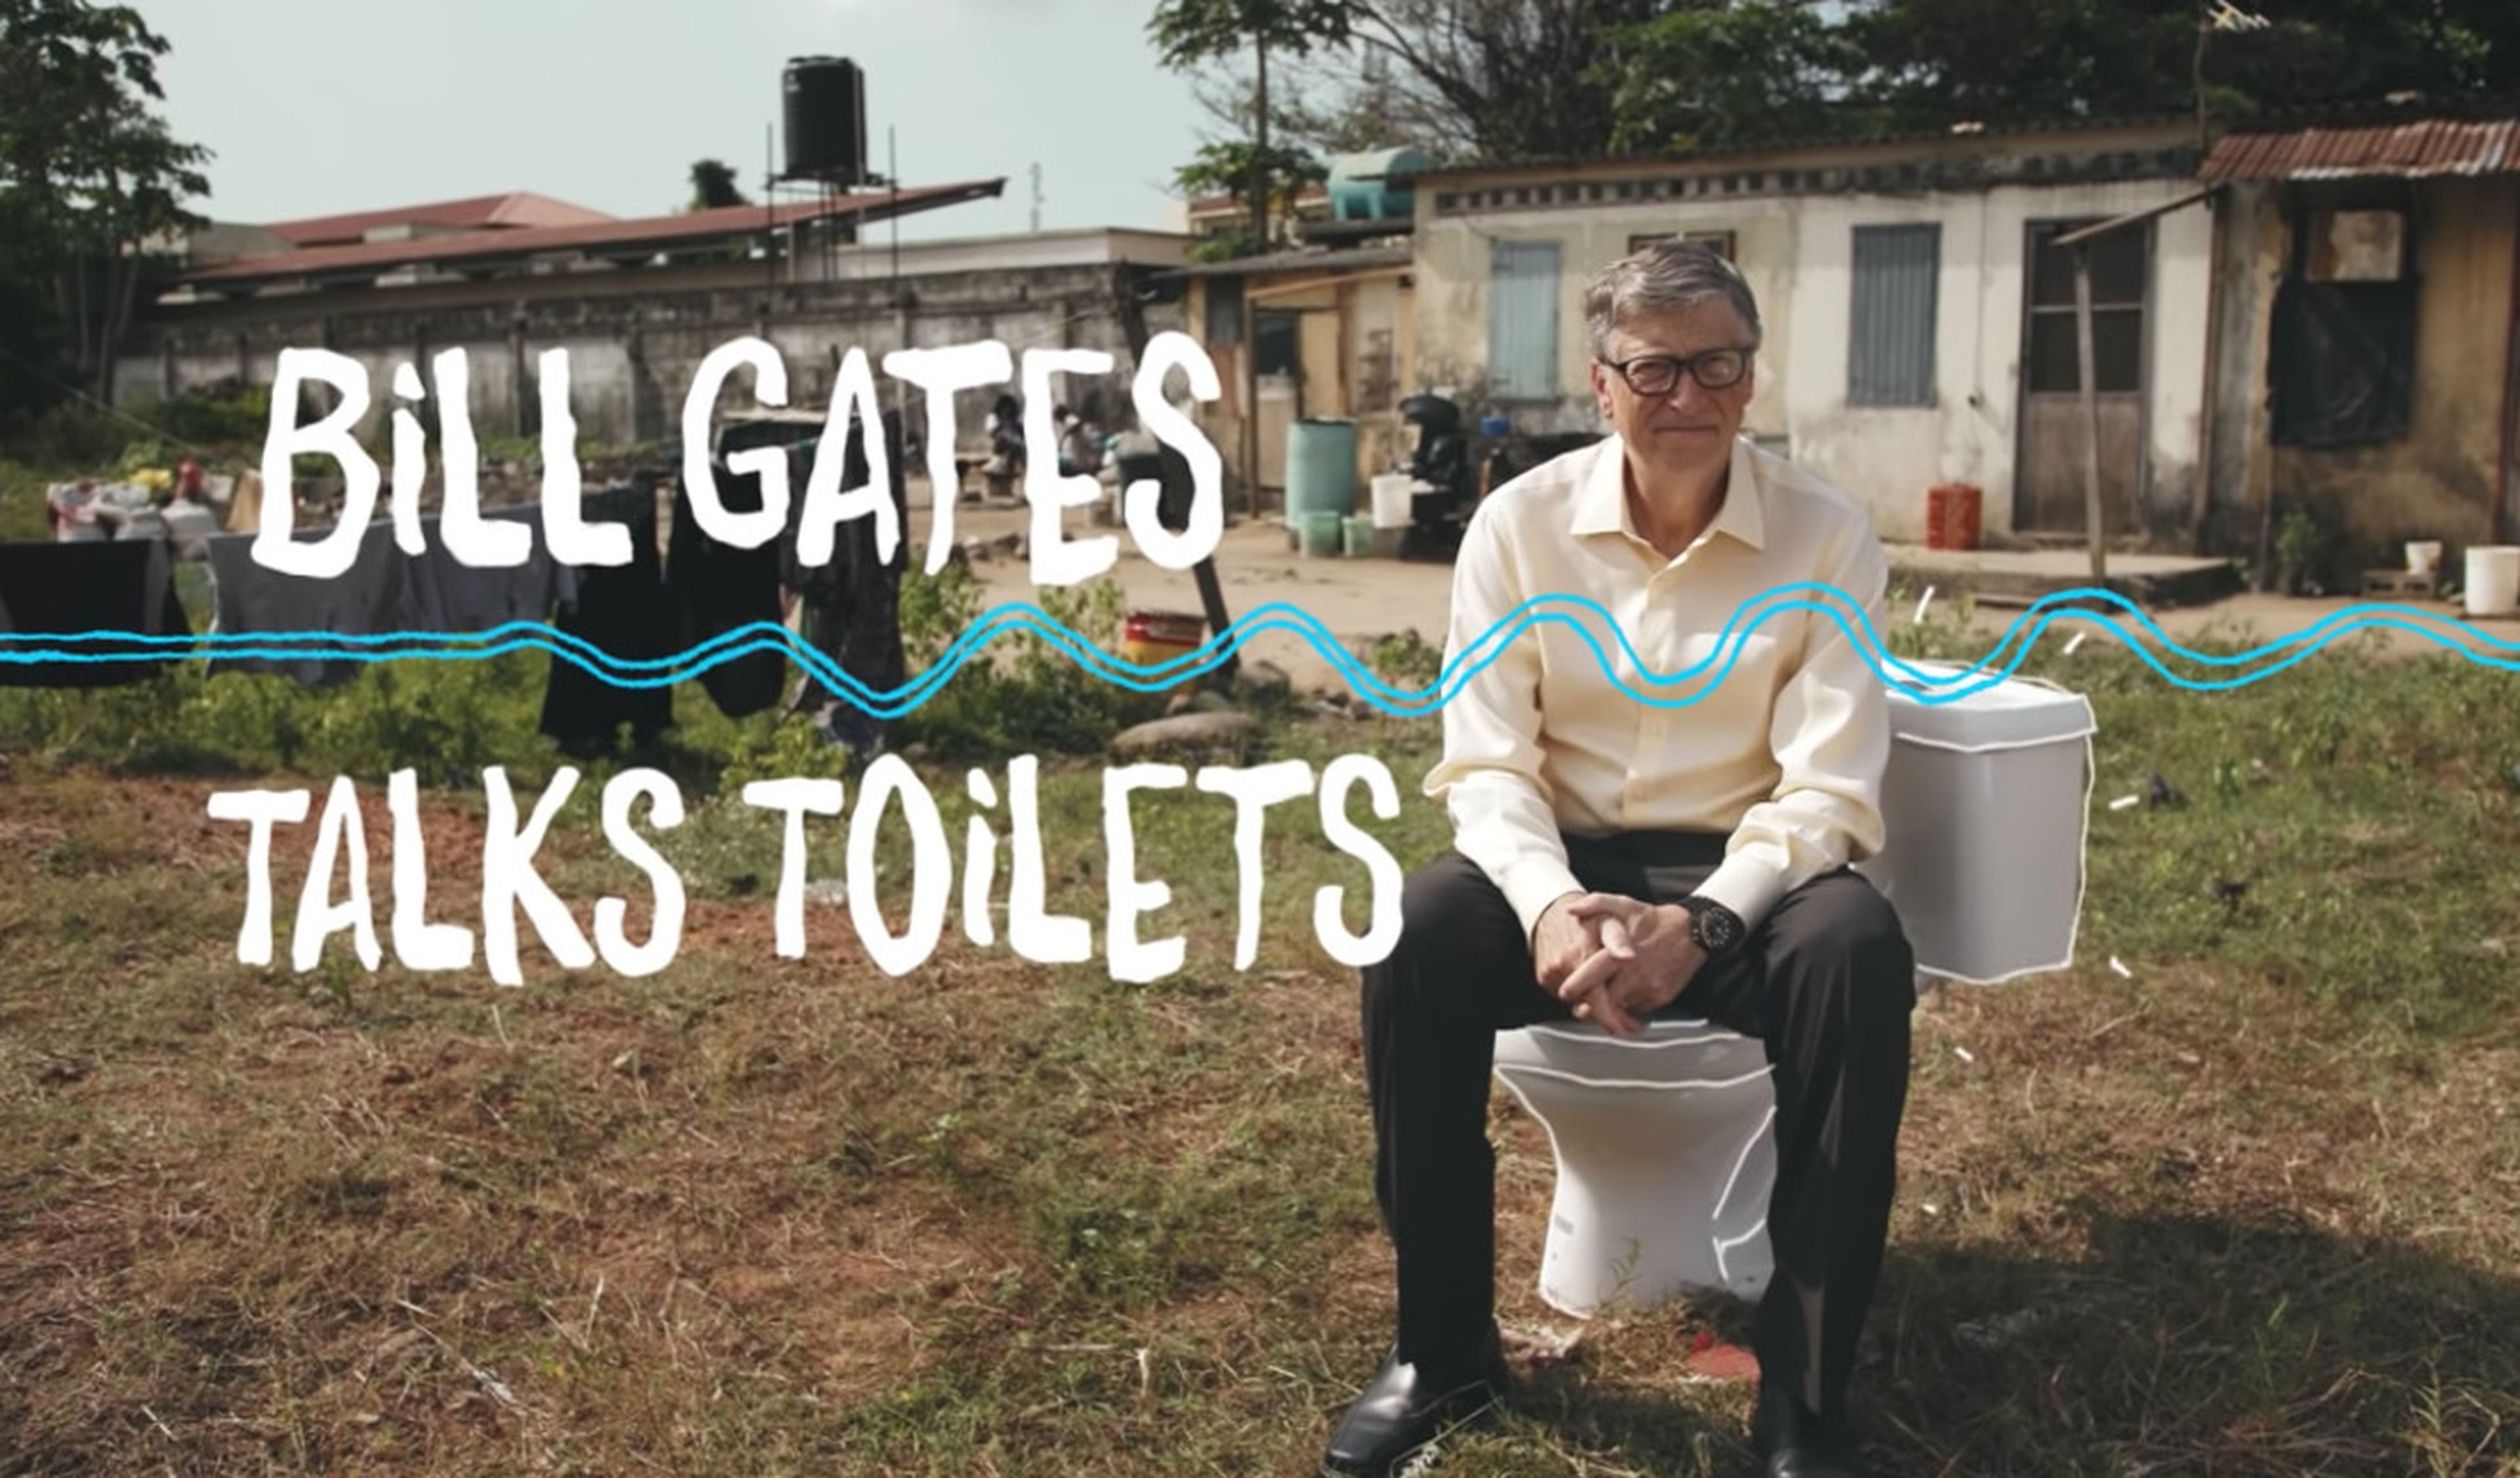 WC de Bill Gates